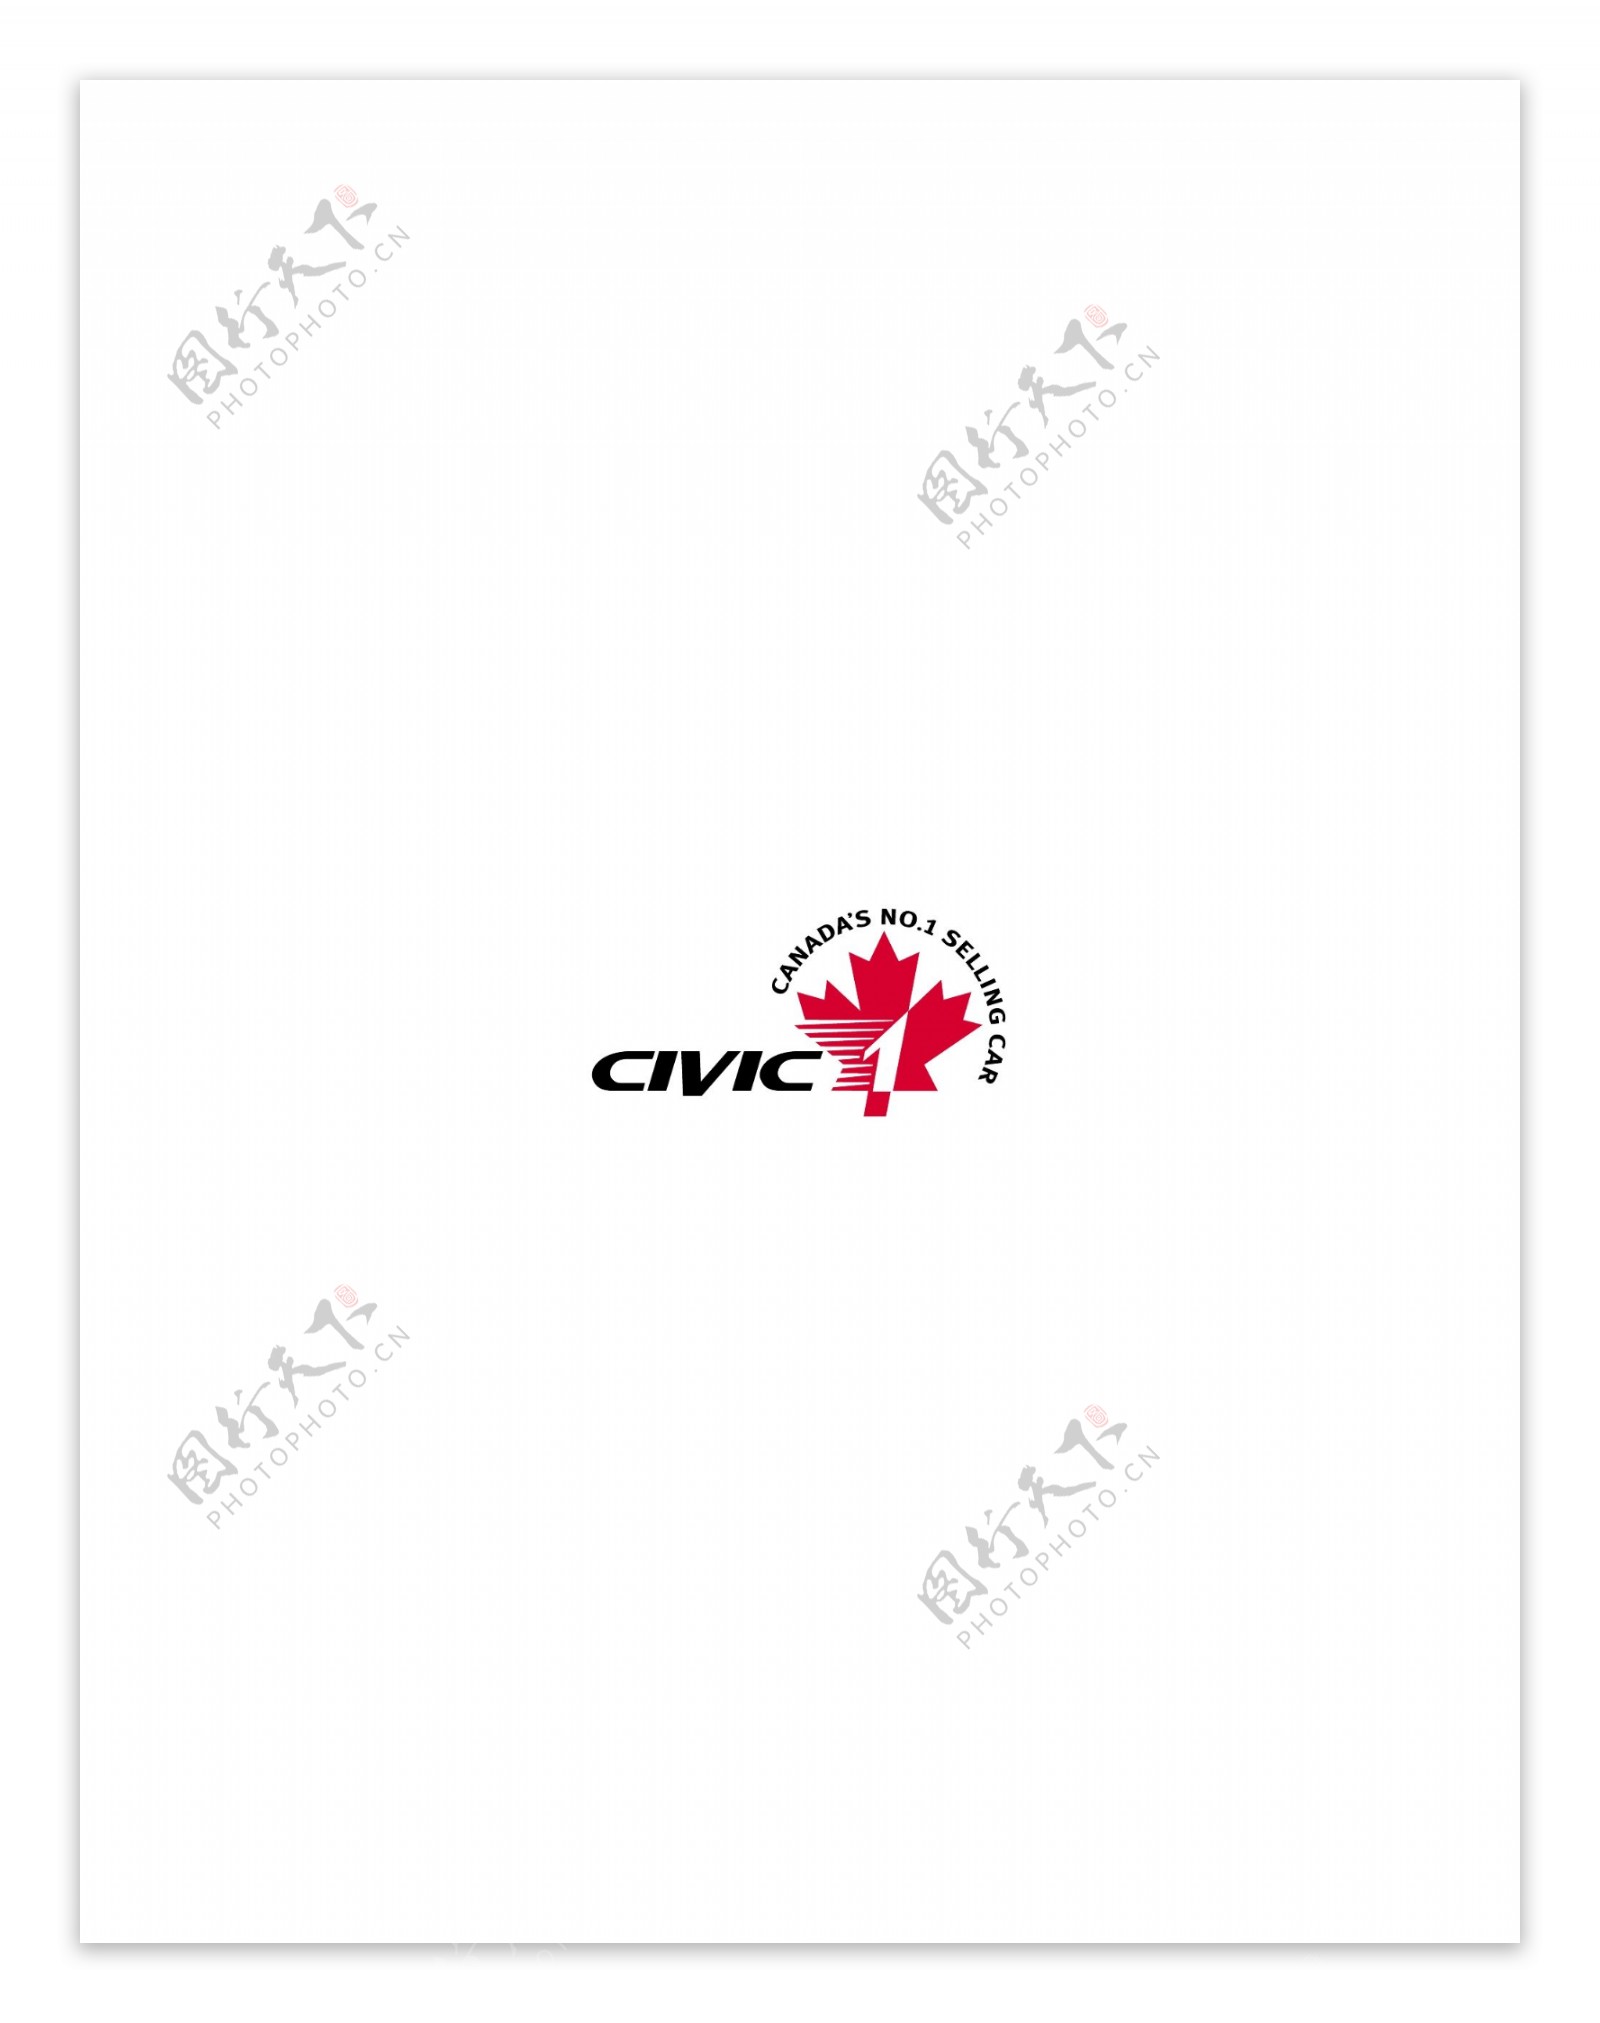 Civic1logo设计欣赏Civic1名车标志欣赏下载标志设计欣赏